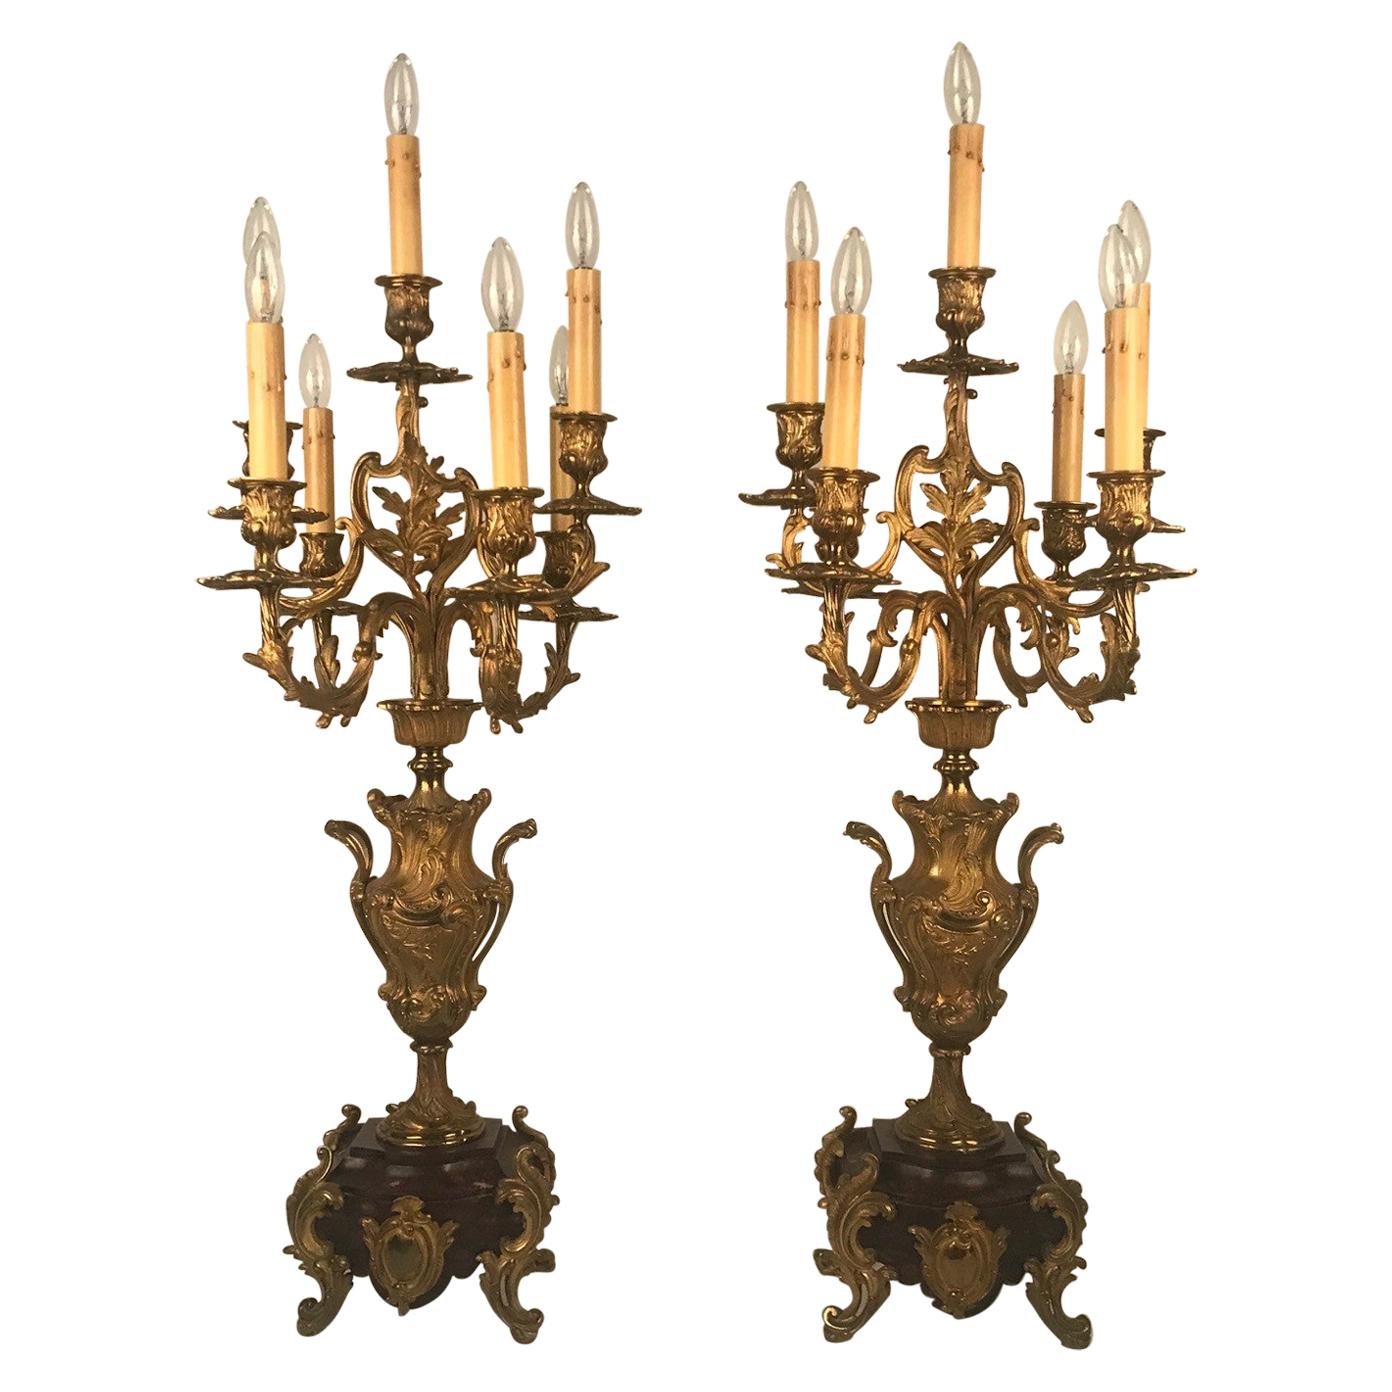 Paire d'anciens candélabres français à six bras en bronze doré sur socles en marbre rouge